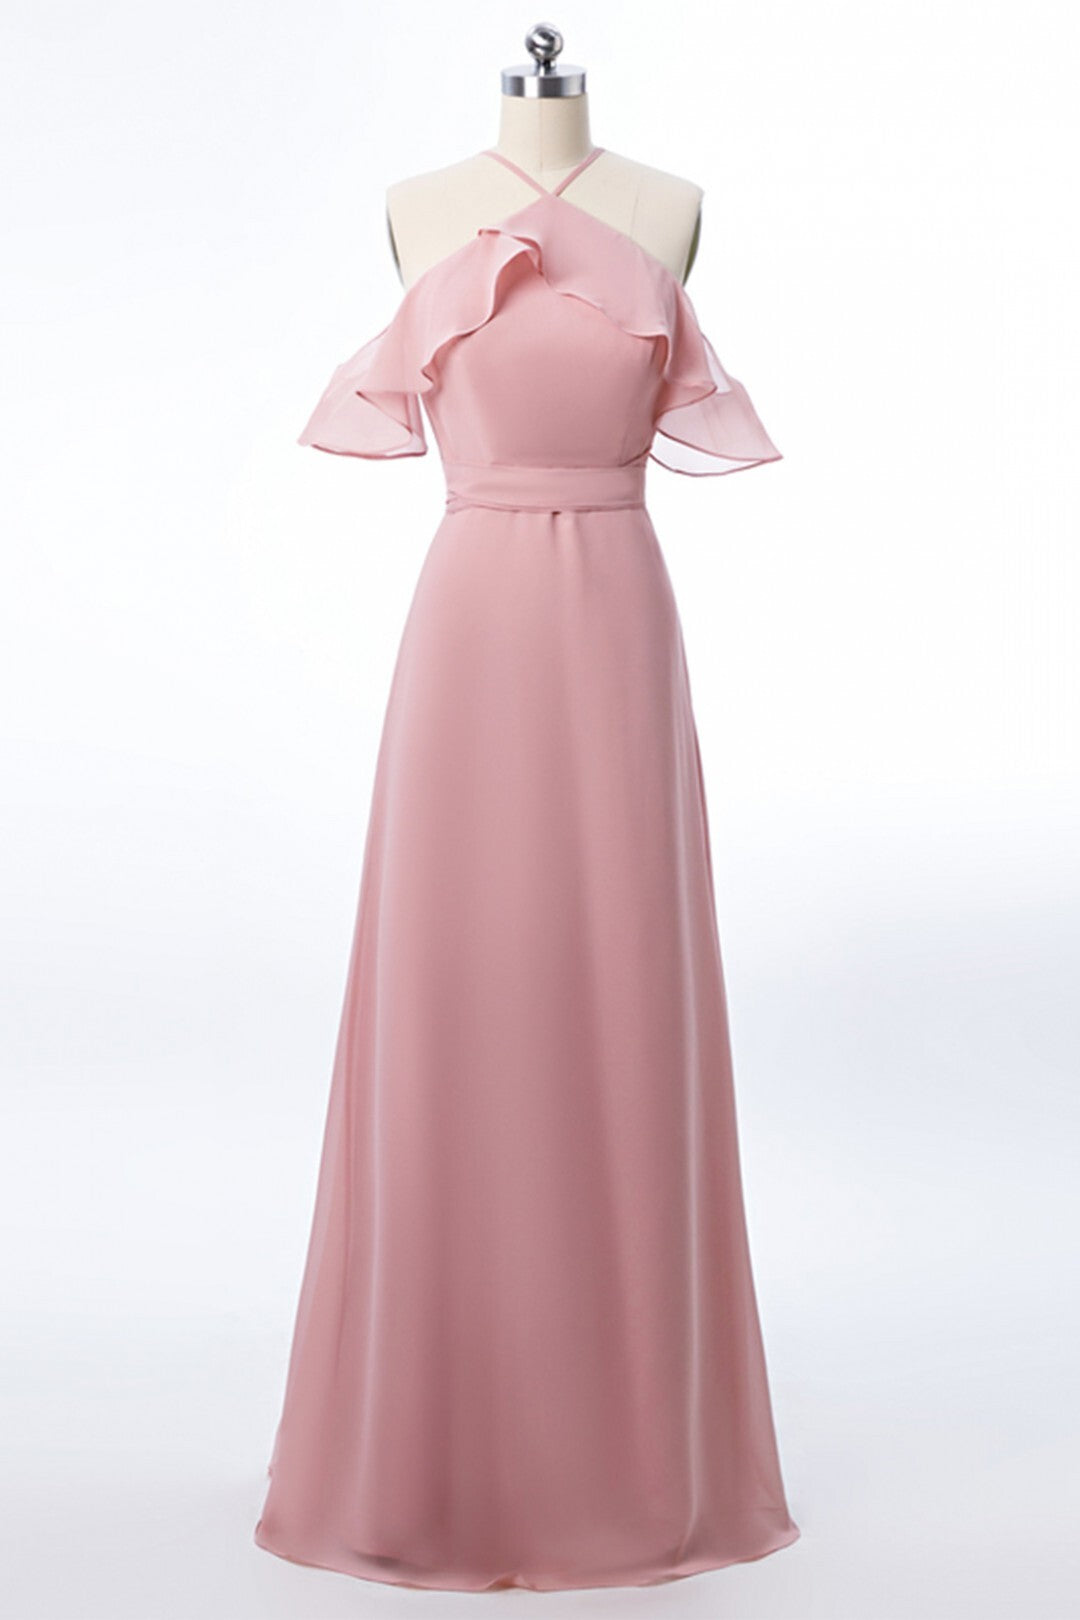 Halter Blush Pink Chiffon Long Bridesmaid Dress